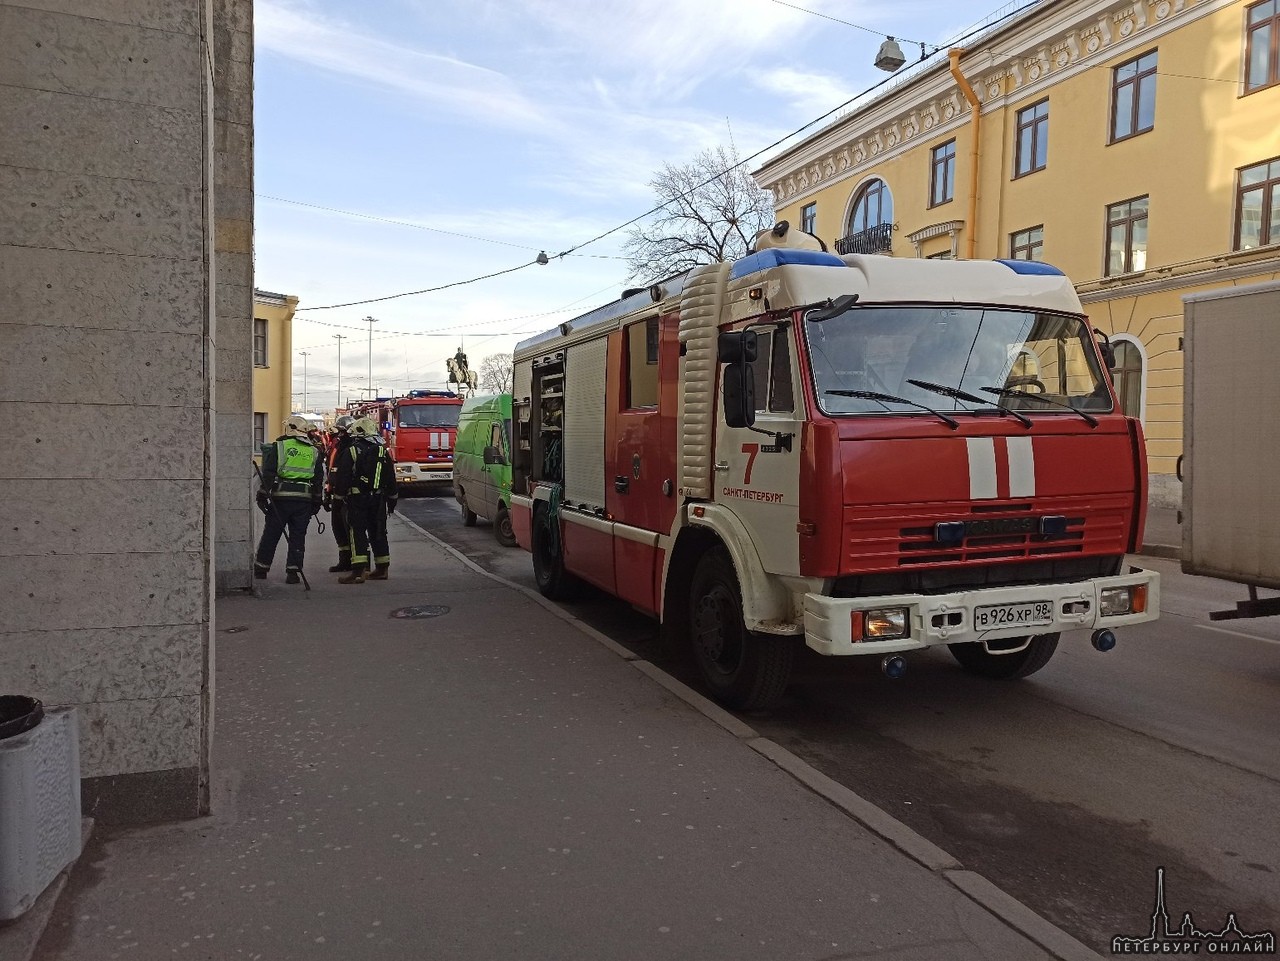 У станции метро площадь Александра Невского. 3 бригады скорой помощи и около 5 пожарных машин